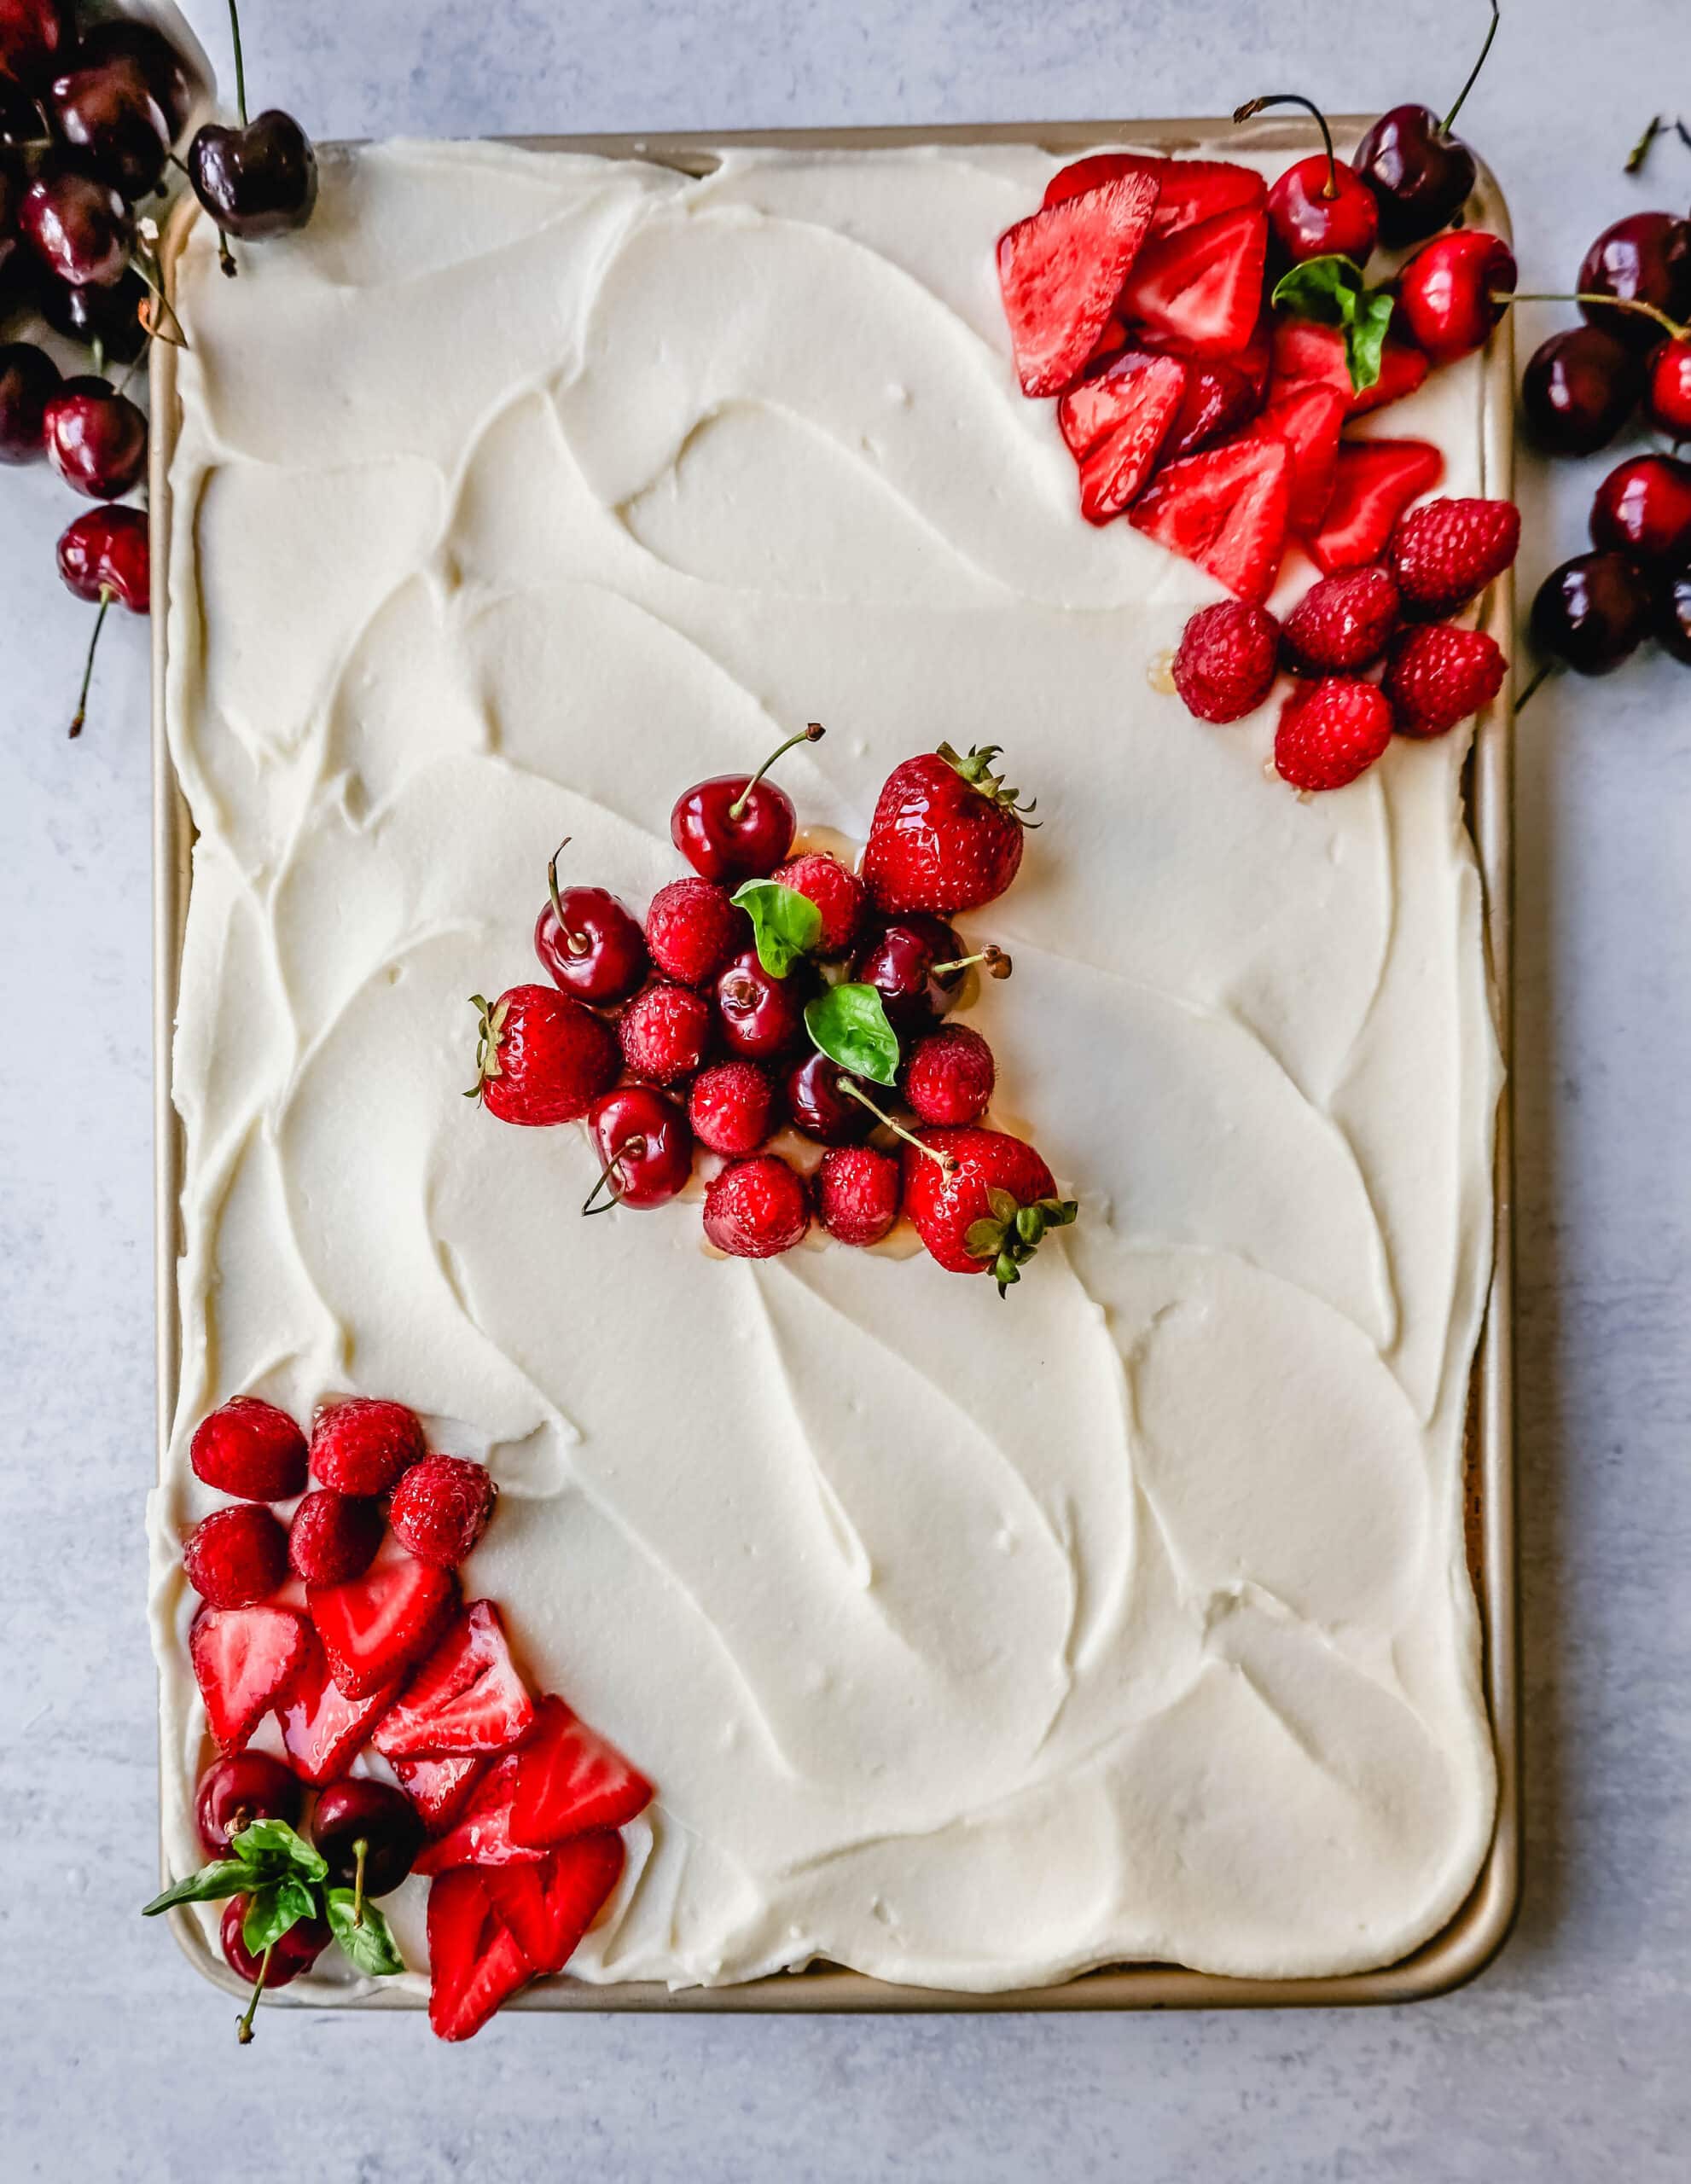 White Texas Sheet Cake Recipe with a moist vanilla sheet cake topped with a creamy vanilla buttercream frosting. An easy white Texas sheet cake that tastes delicious!